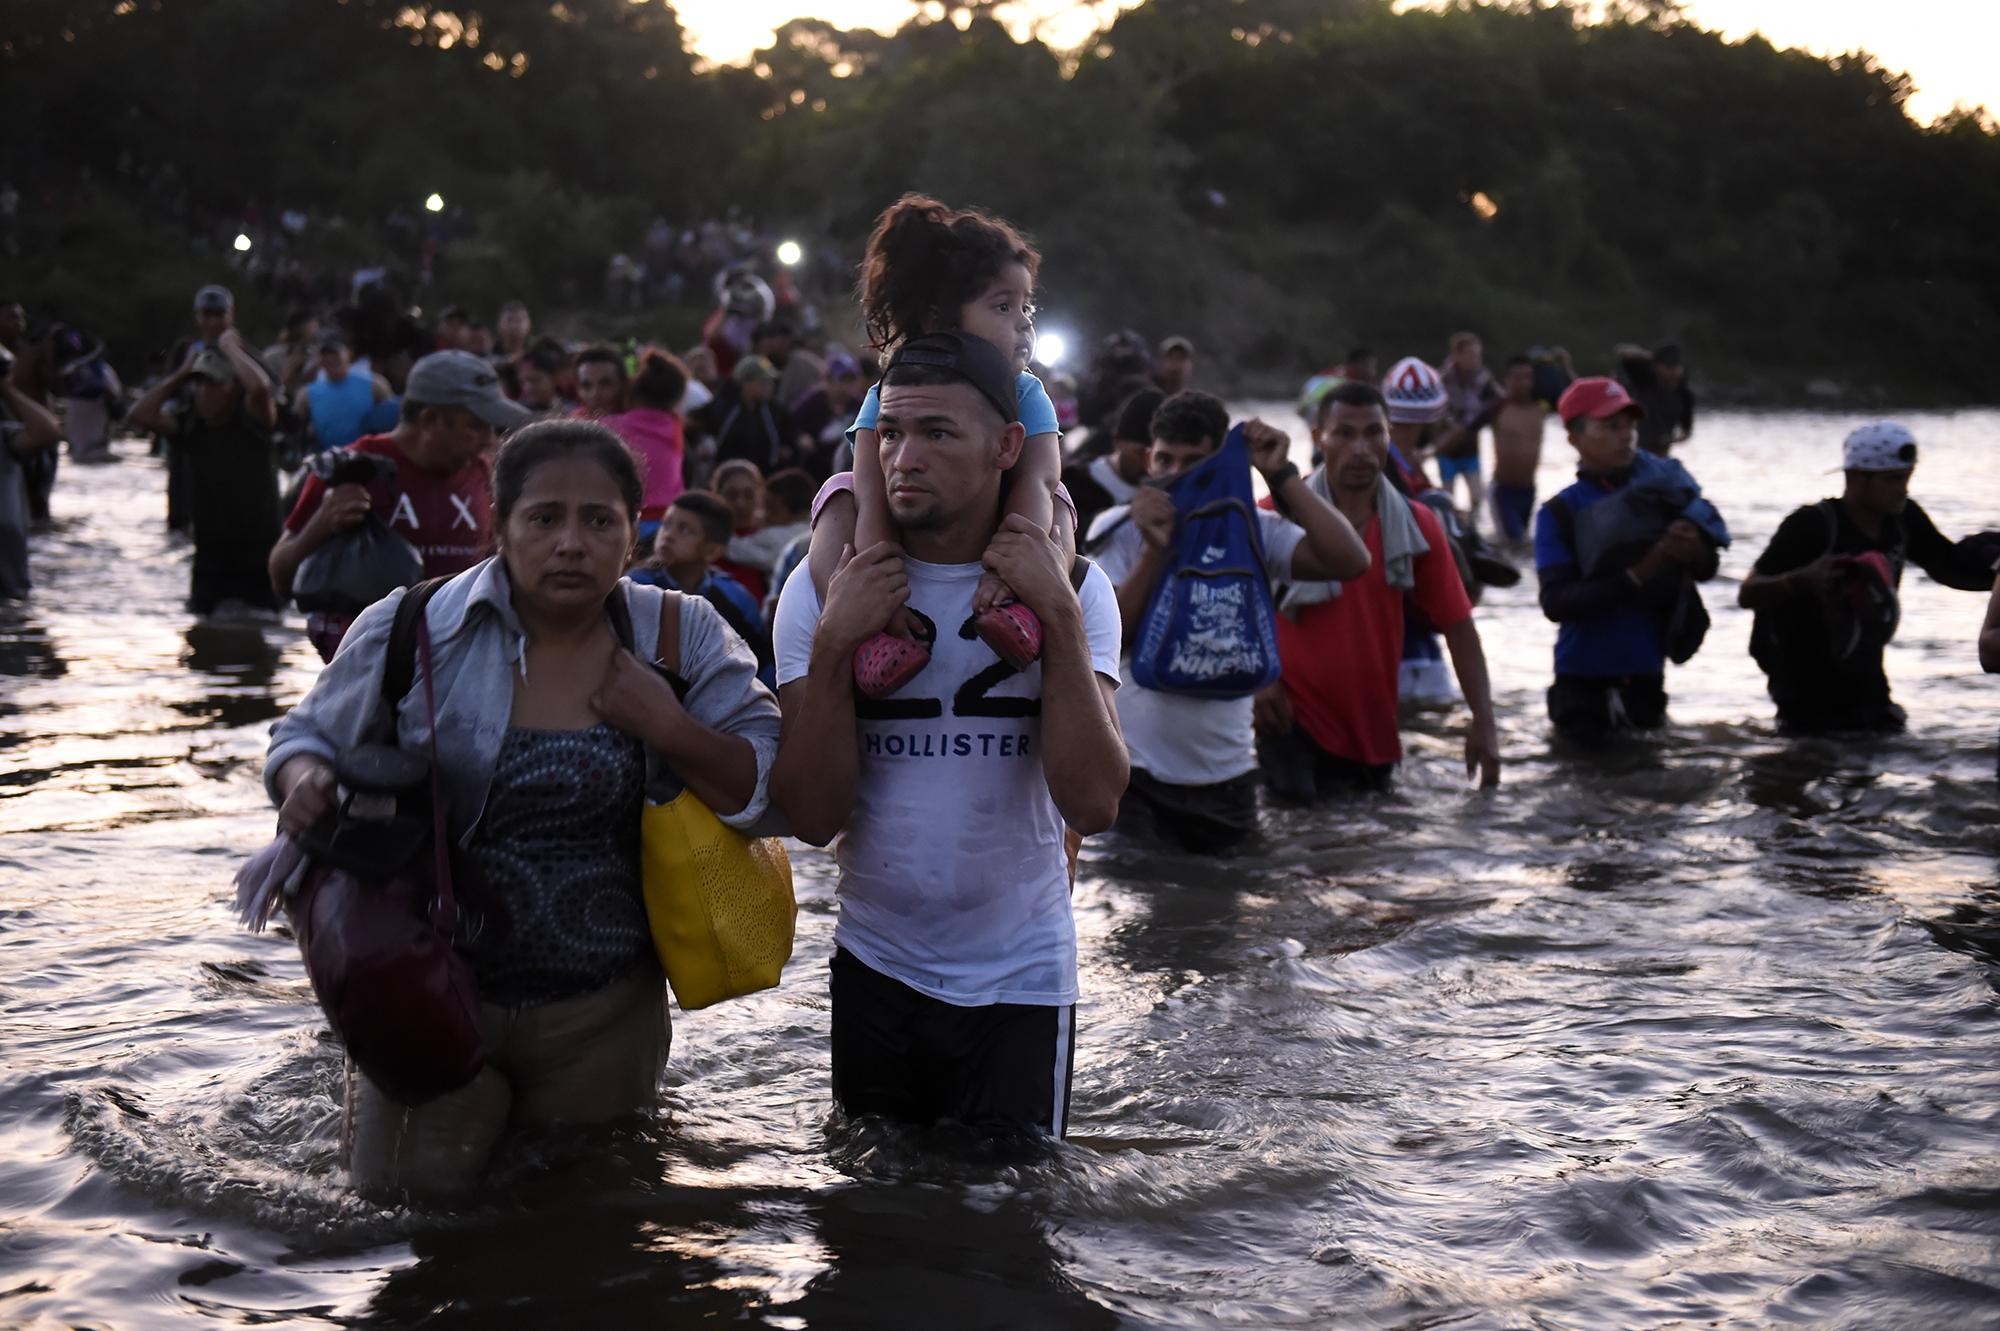 La caravana sorteó el río Suchiate. Cruzó lejos de la zona de control migratorio ubicada en el puente Rodolfo Robles. Alrededor de 3,000 personas, muchas de ellas con niños, caminaron por las calles del Estado de Chiapas en busca de Tapachula. Foto de AFP: Alfredo Estrella.